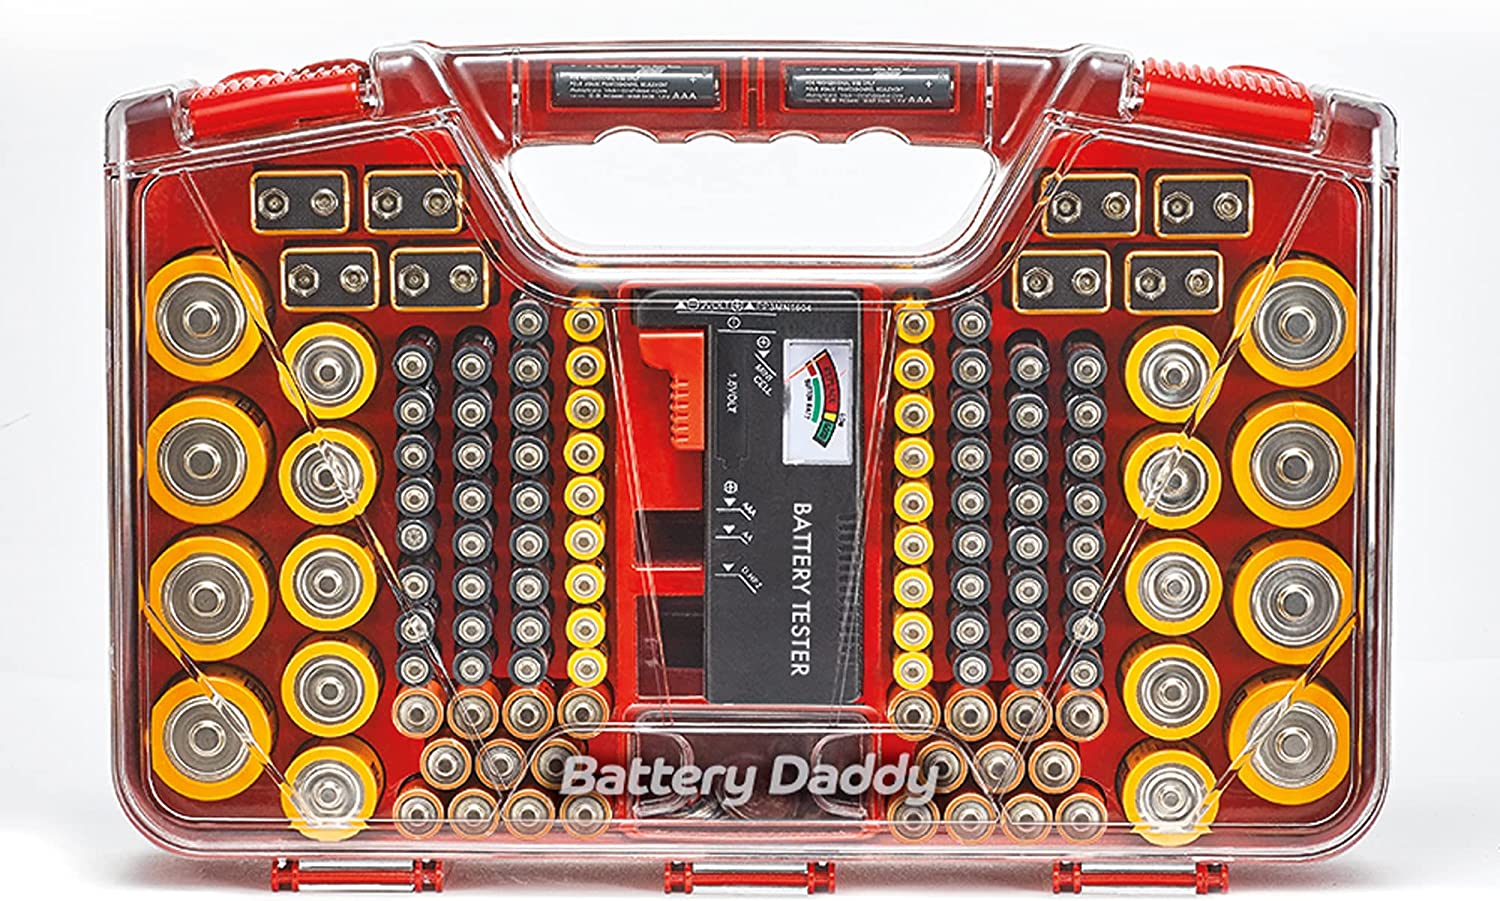 Battery Daddy Solupiles – Système de rangement pour 180 piles